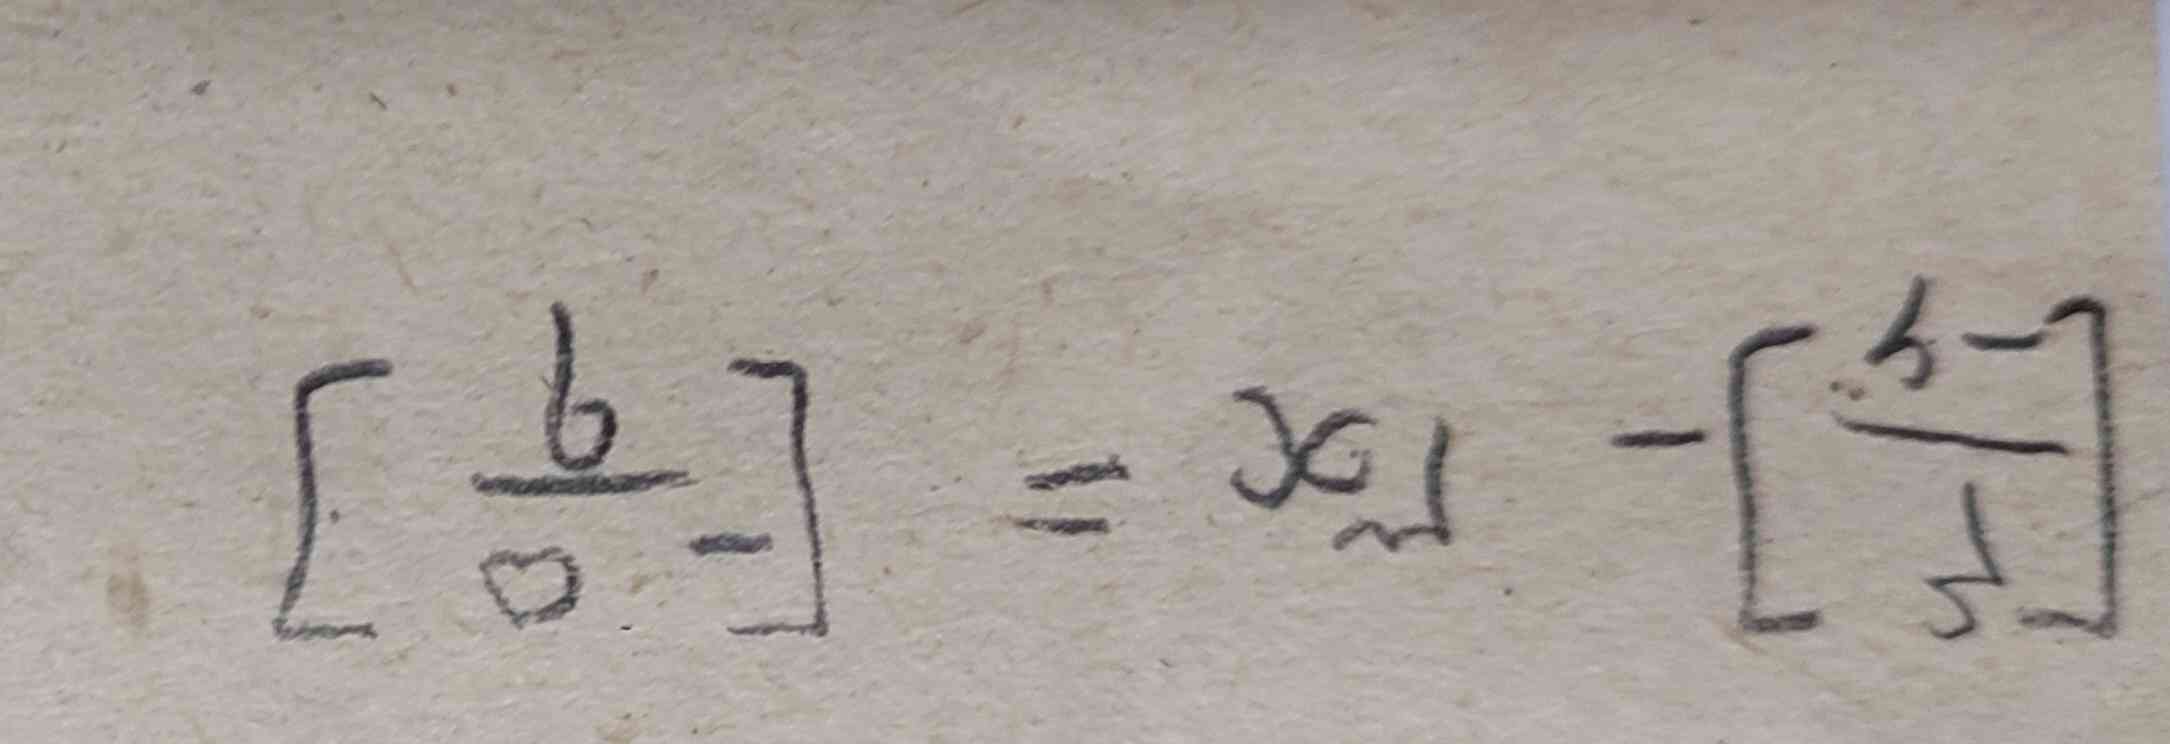 معادله رو حل کنید با  توضیح و راه حل = 3 نفر اول تاج